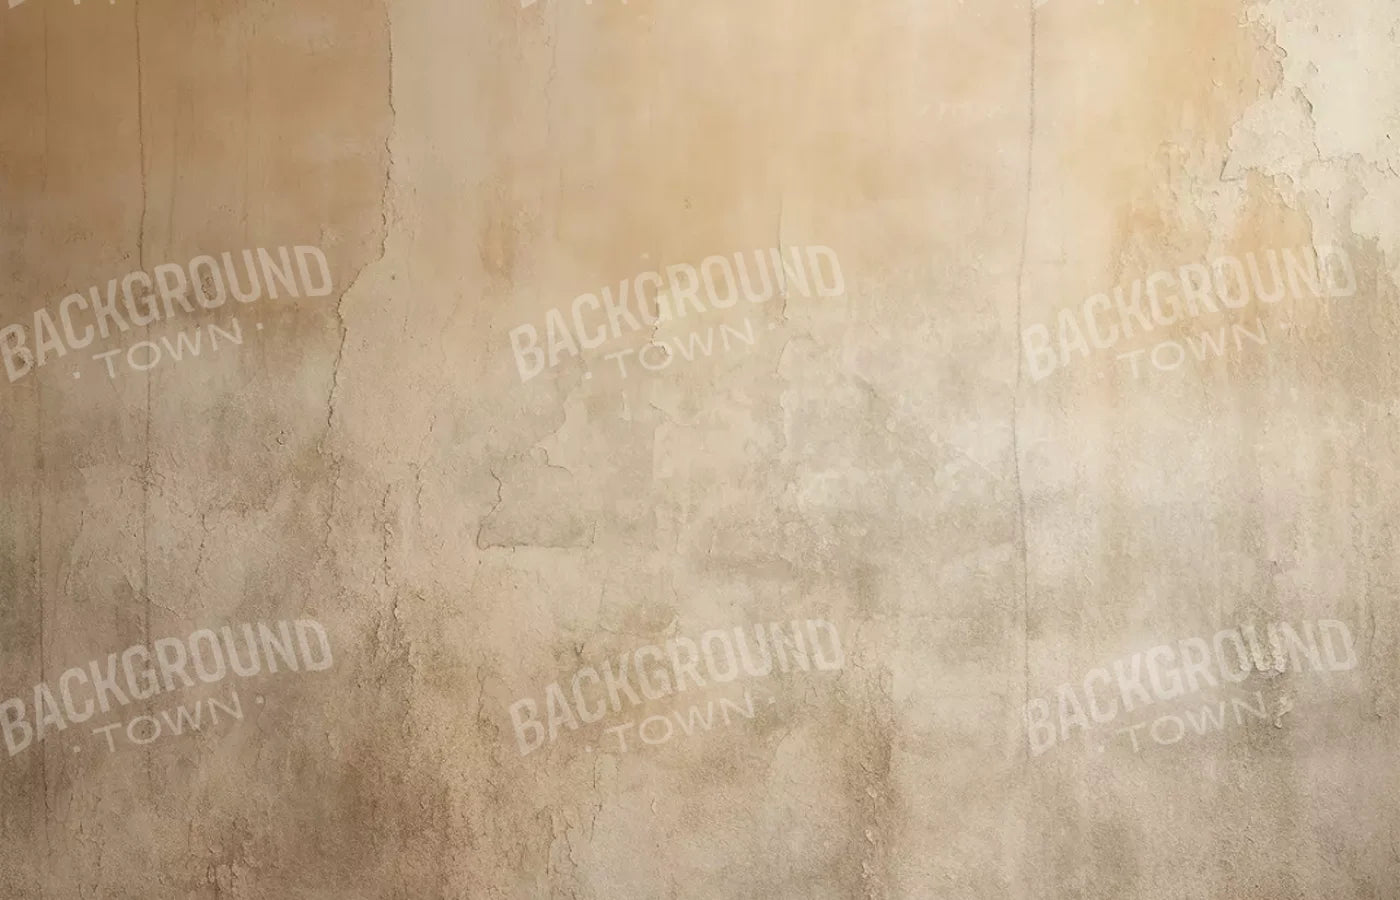 Plaster Wall Cream Iii 14’X9’ Ultracloth (168 X 108 Inch) Backdrop